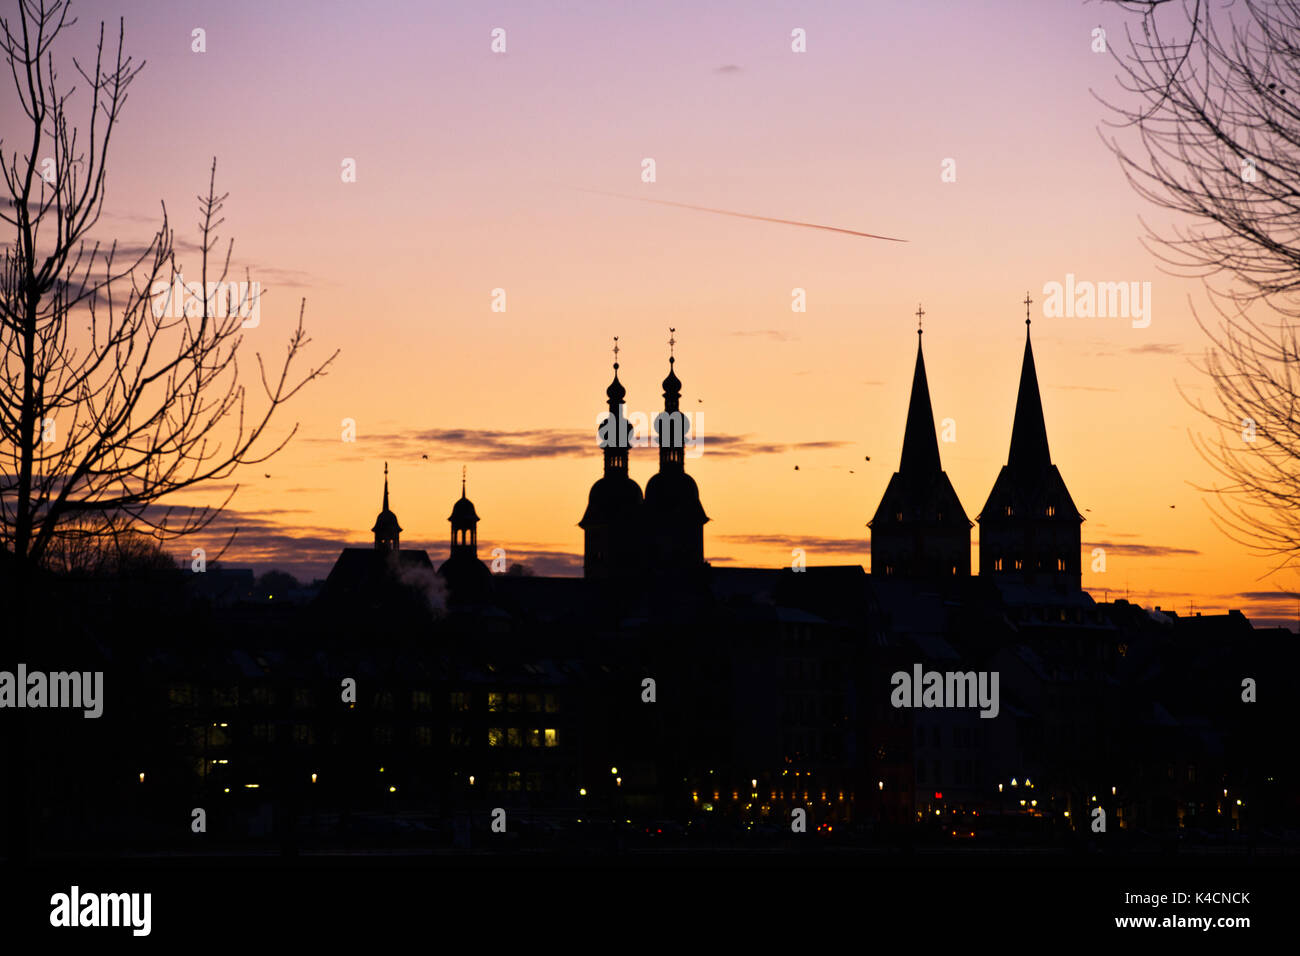 Silueta de iglesias en Koblenz en el cielo nocturno Foto de stock